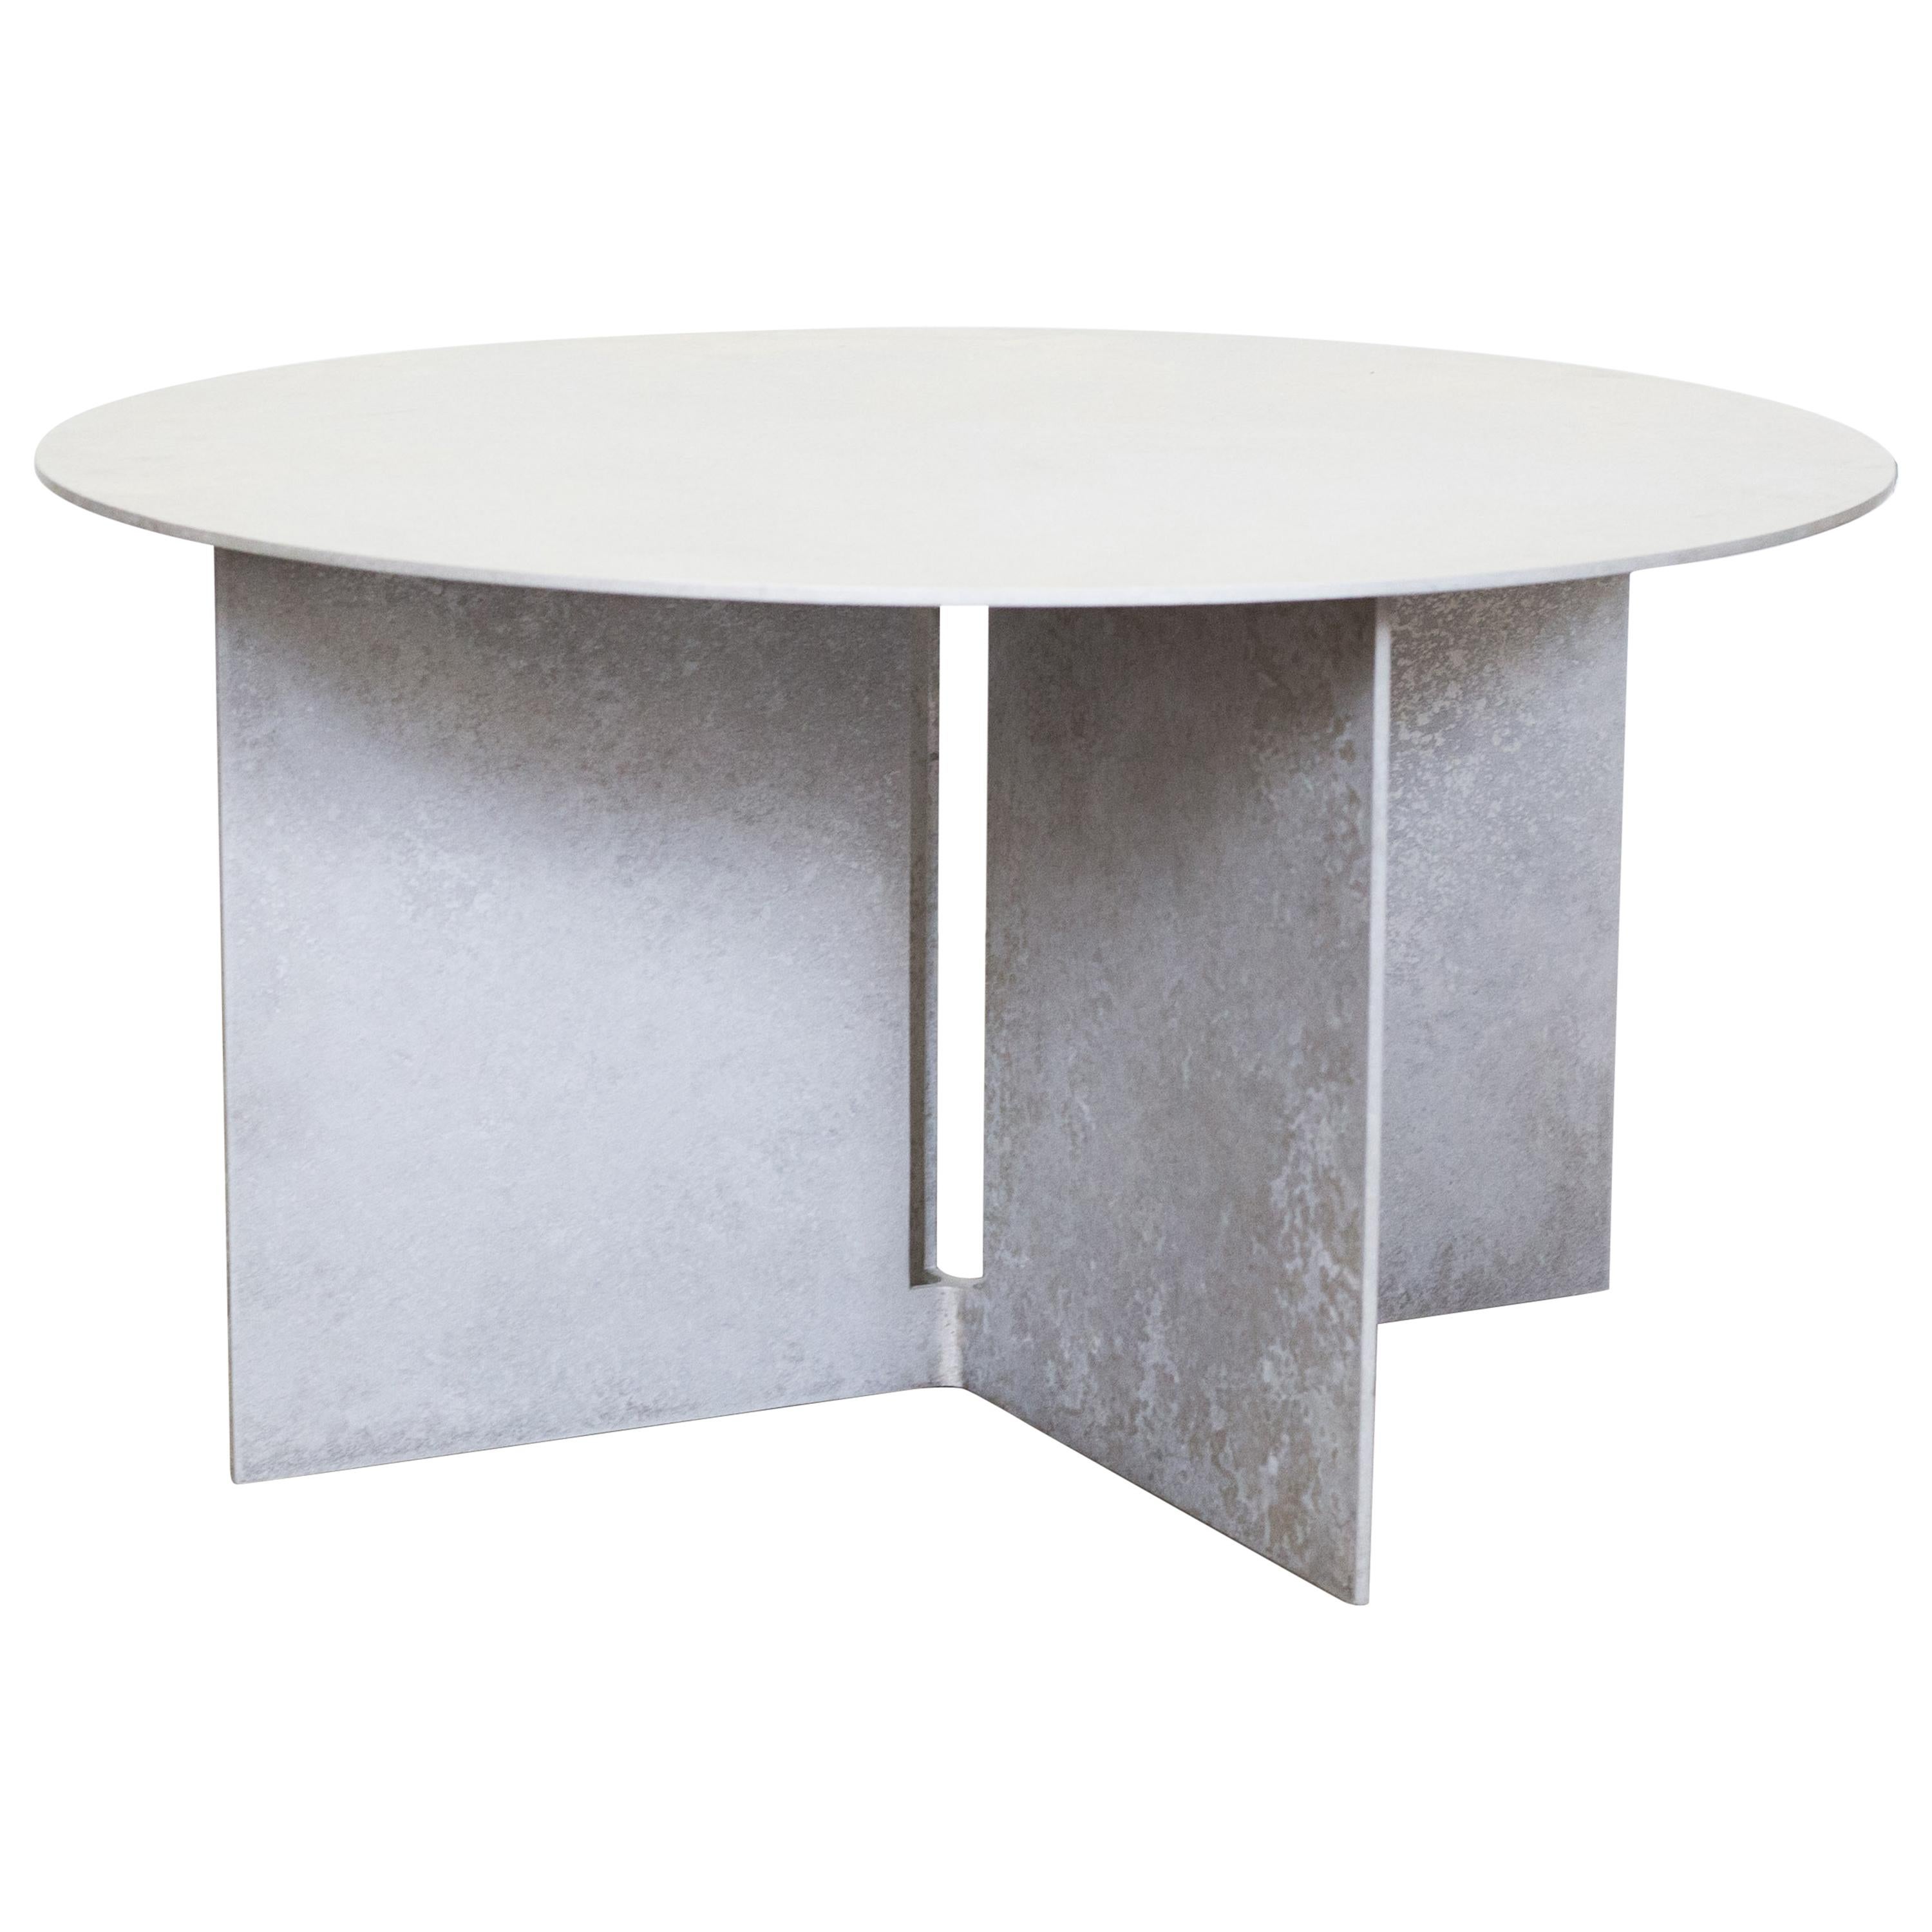 Table basse Mers en aluminium avec paquet de sel